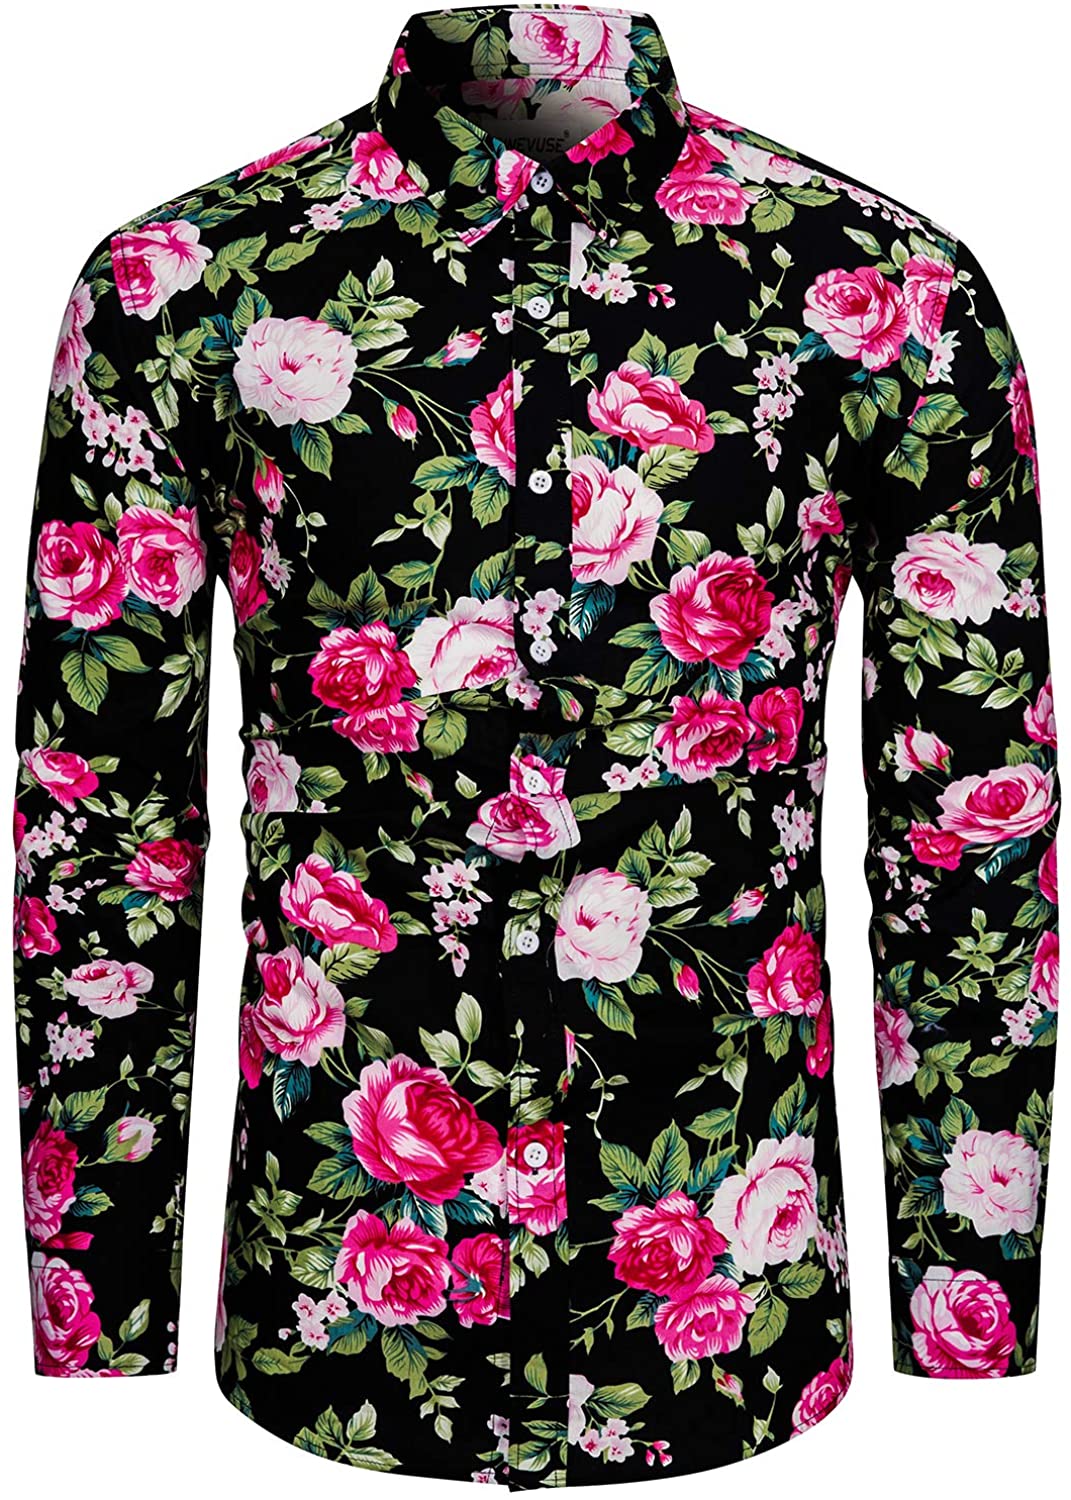 TUNEVUSE Mens Floral Dress Shirt Long Sleeve Hawaiian Button Down Flower  Pattern